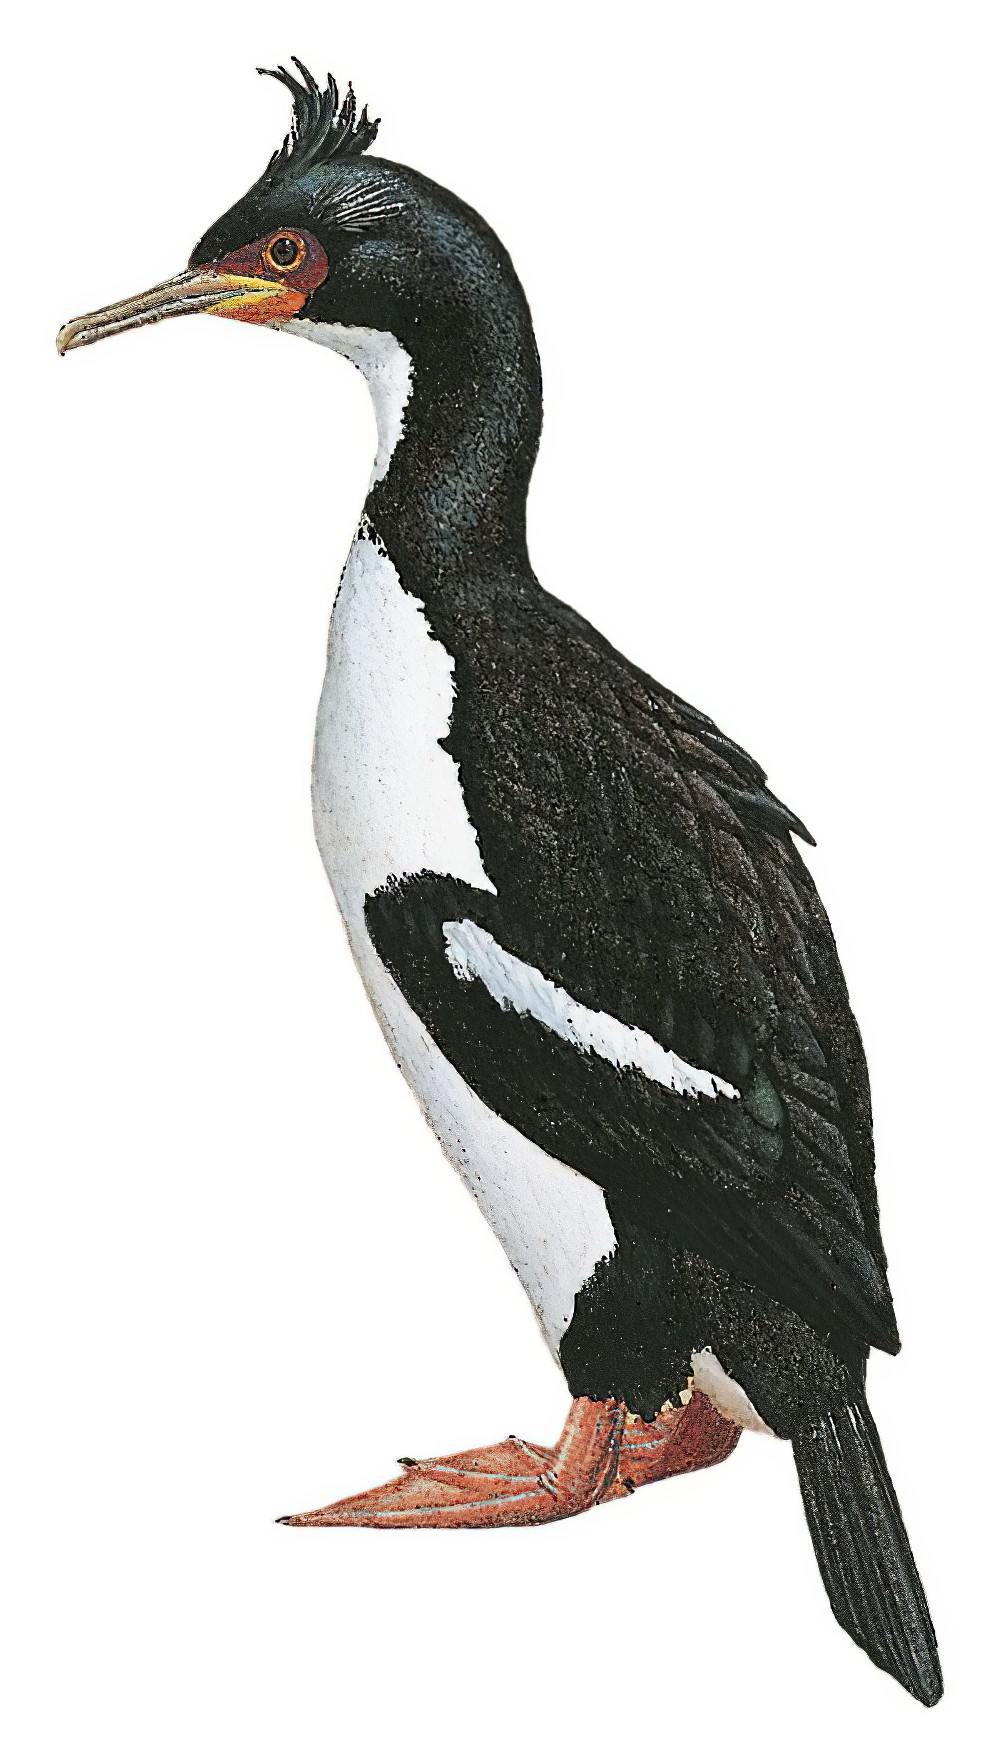 Auckland Islands Shag / Phalacrocorax colensoi